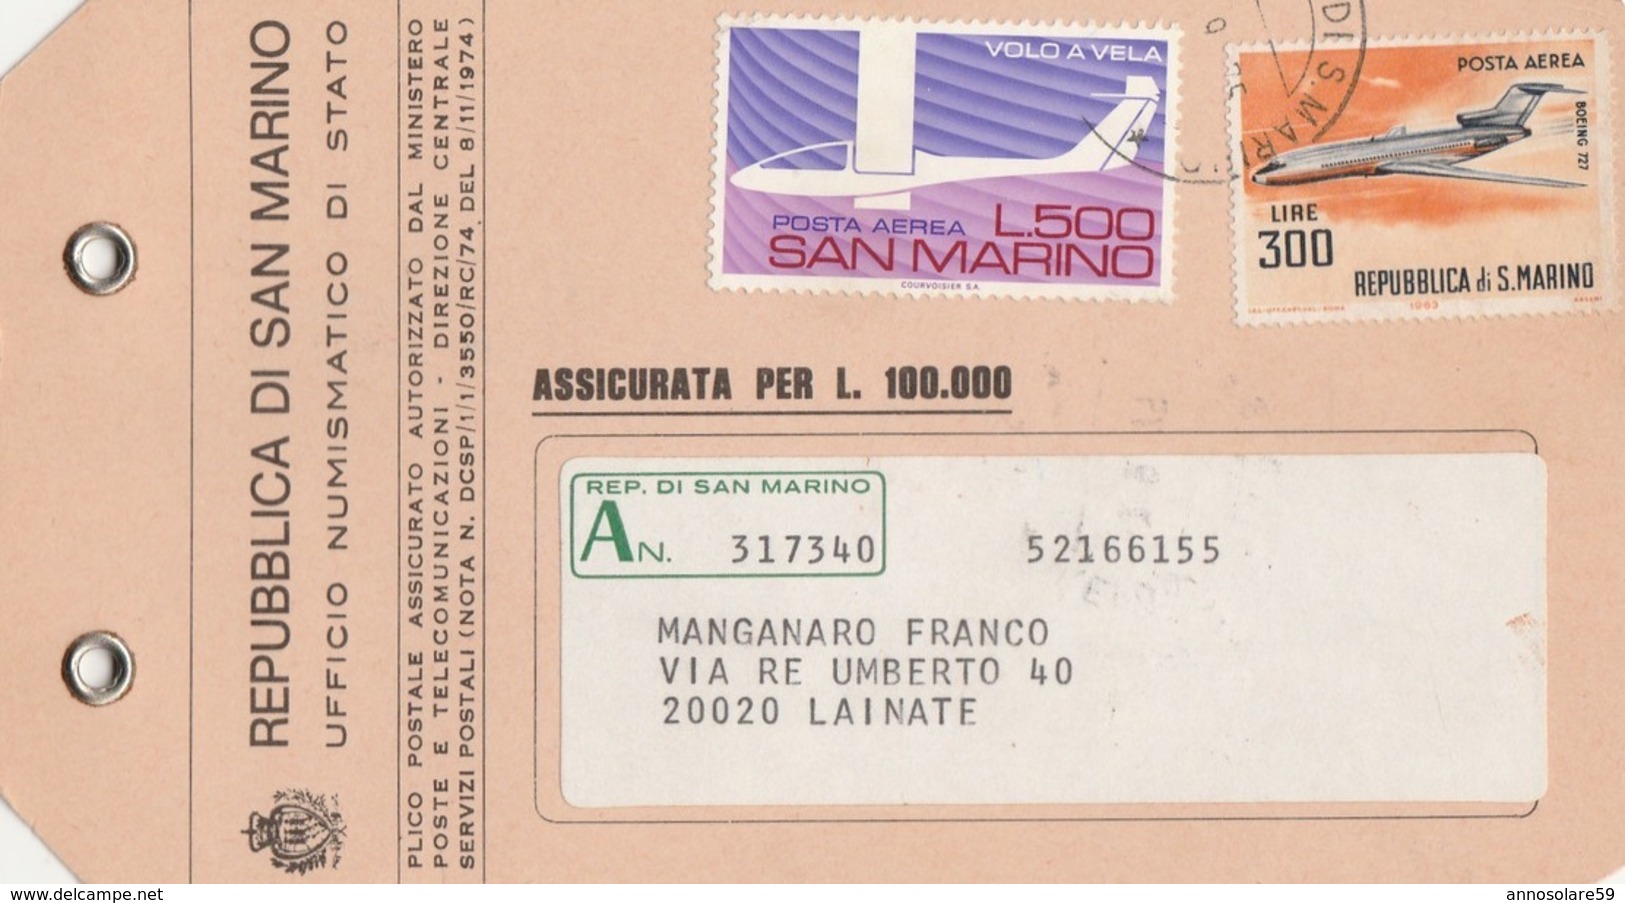 AIRPLANES - SAN MARINO - STORIA POSTALE - ETICHETTA PLICCO POSTALE - BELLISSIMA 1975 - LEGGI - Andere Vervoerswijzen